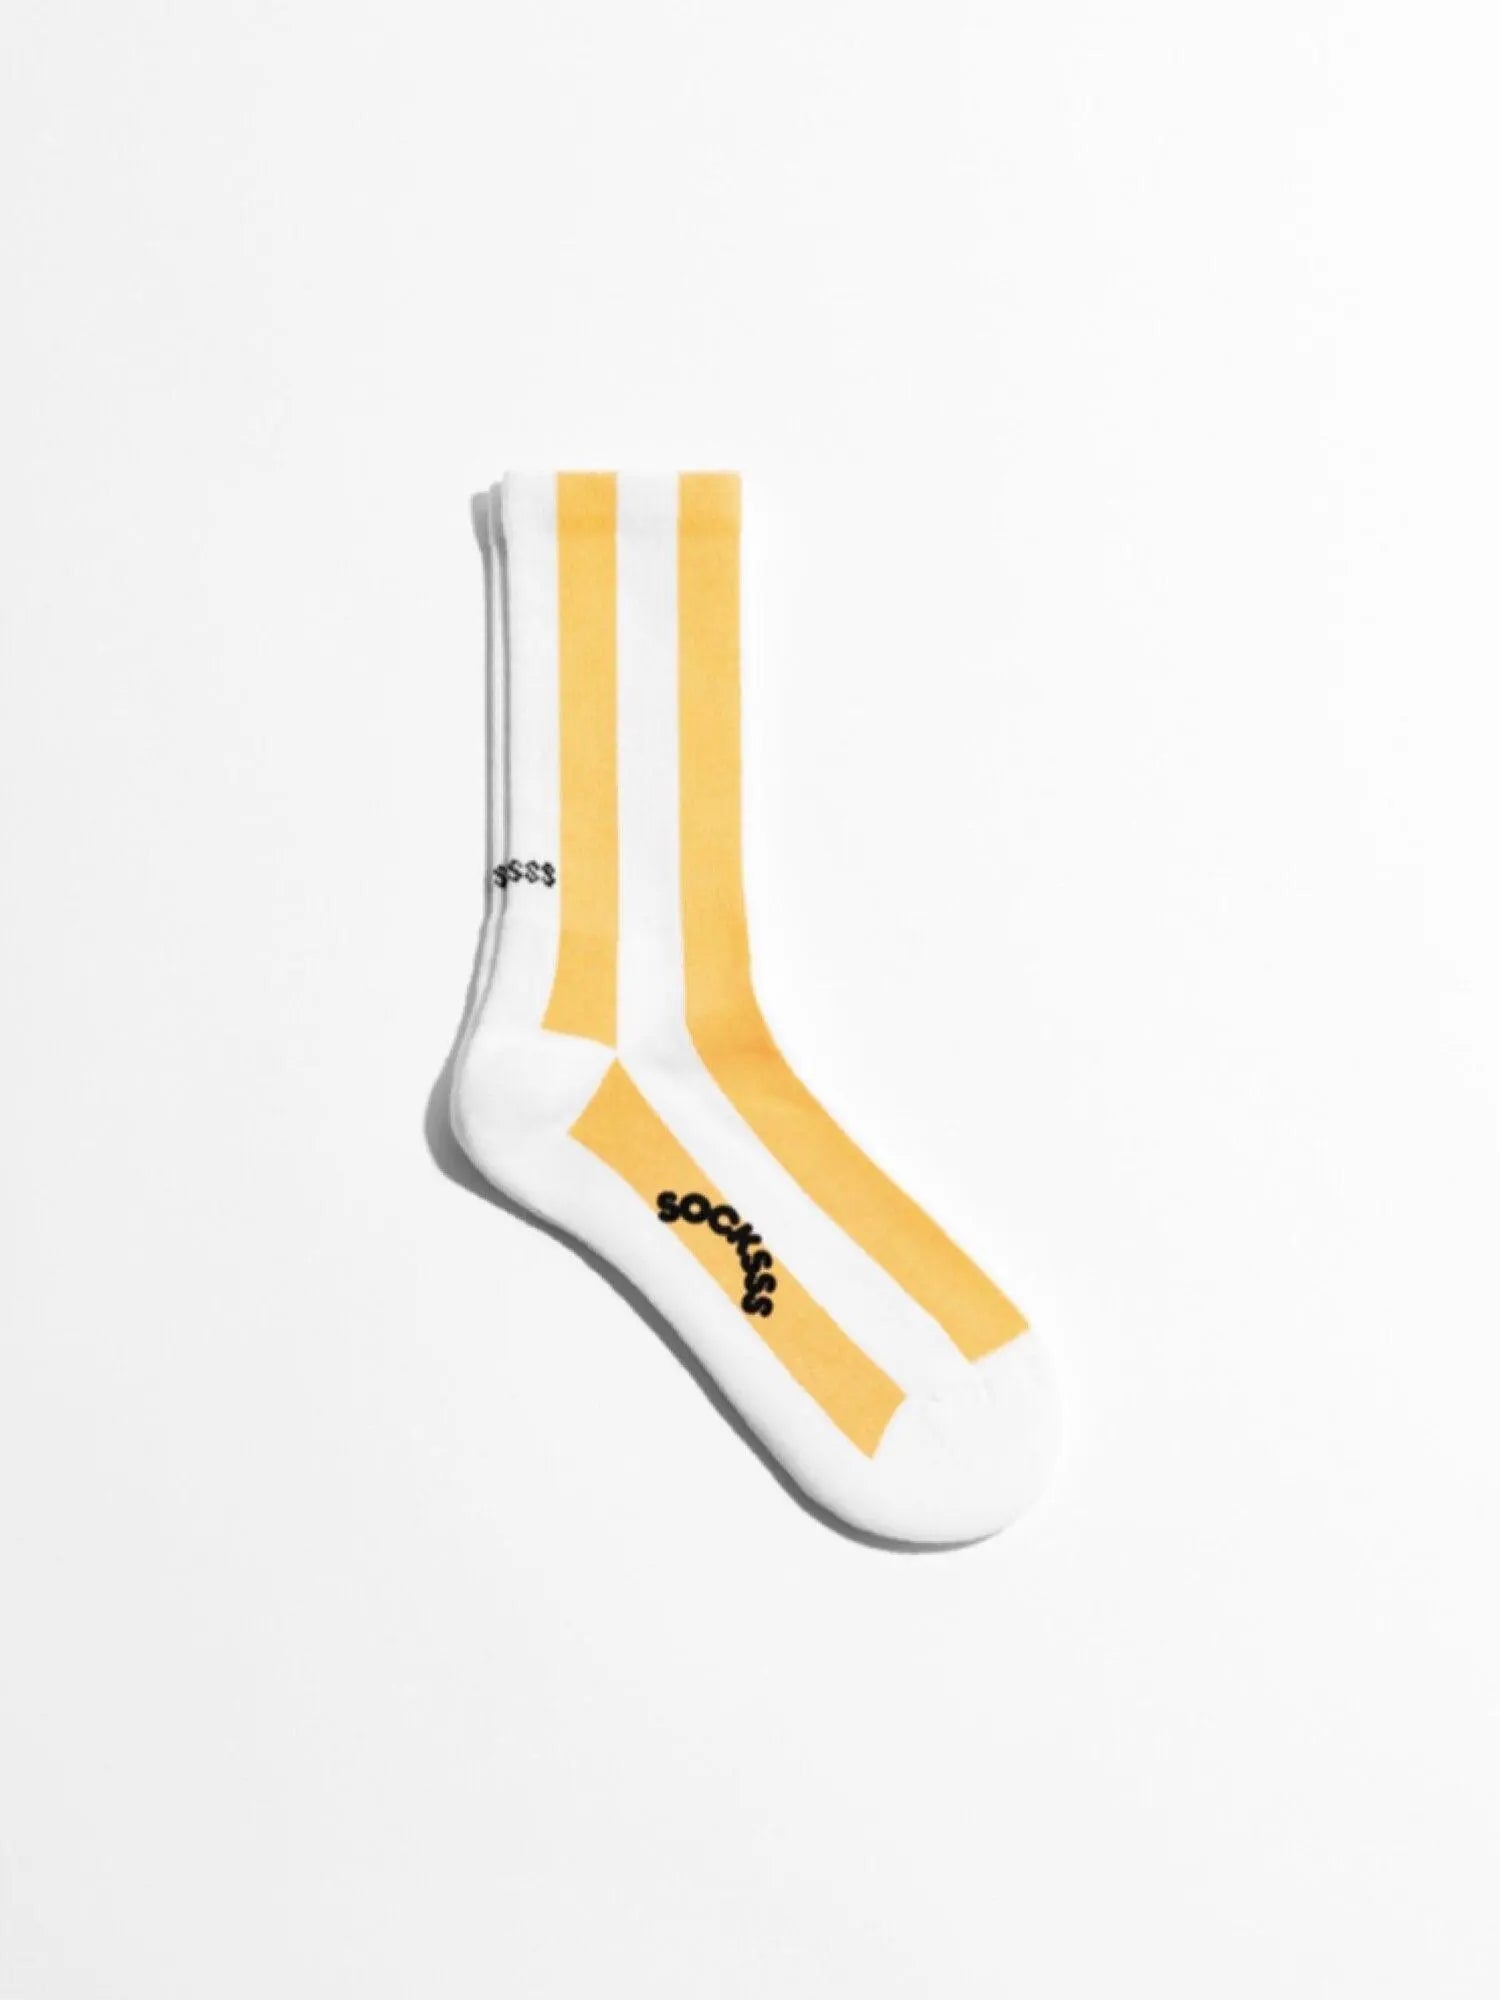 Sunbeam Socks - Socksss Socksss